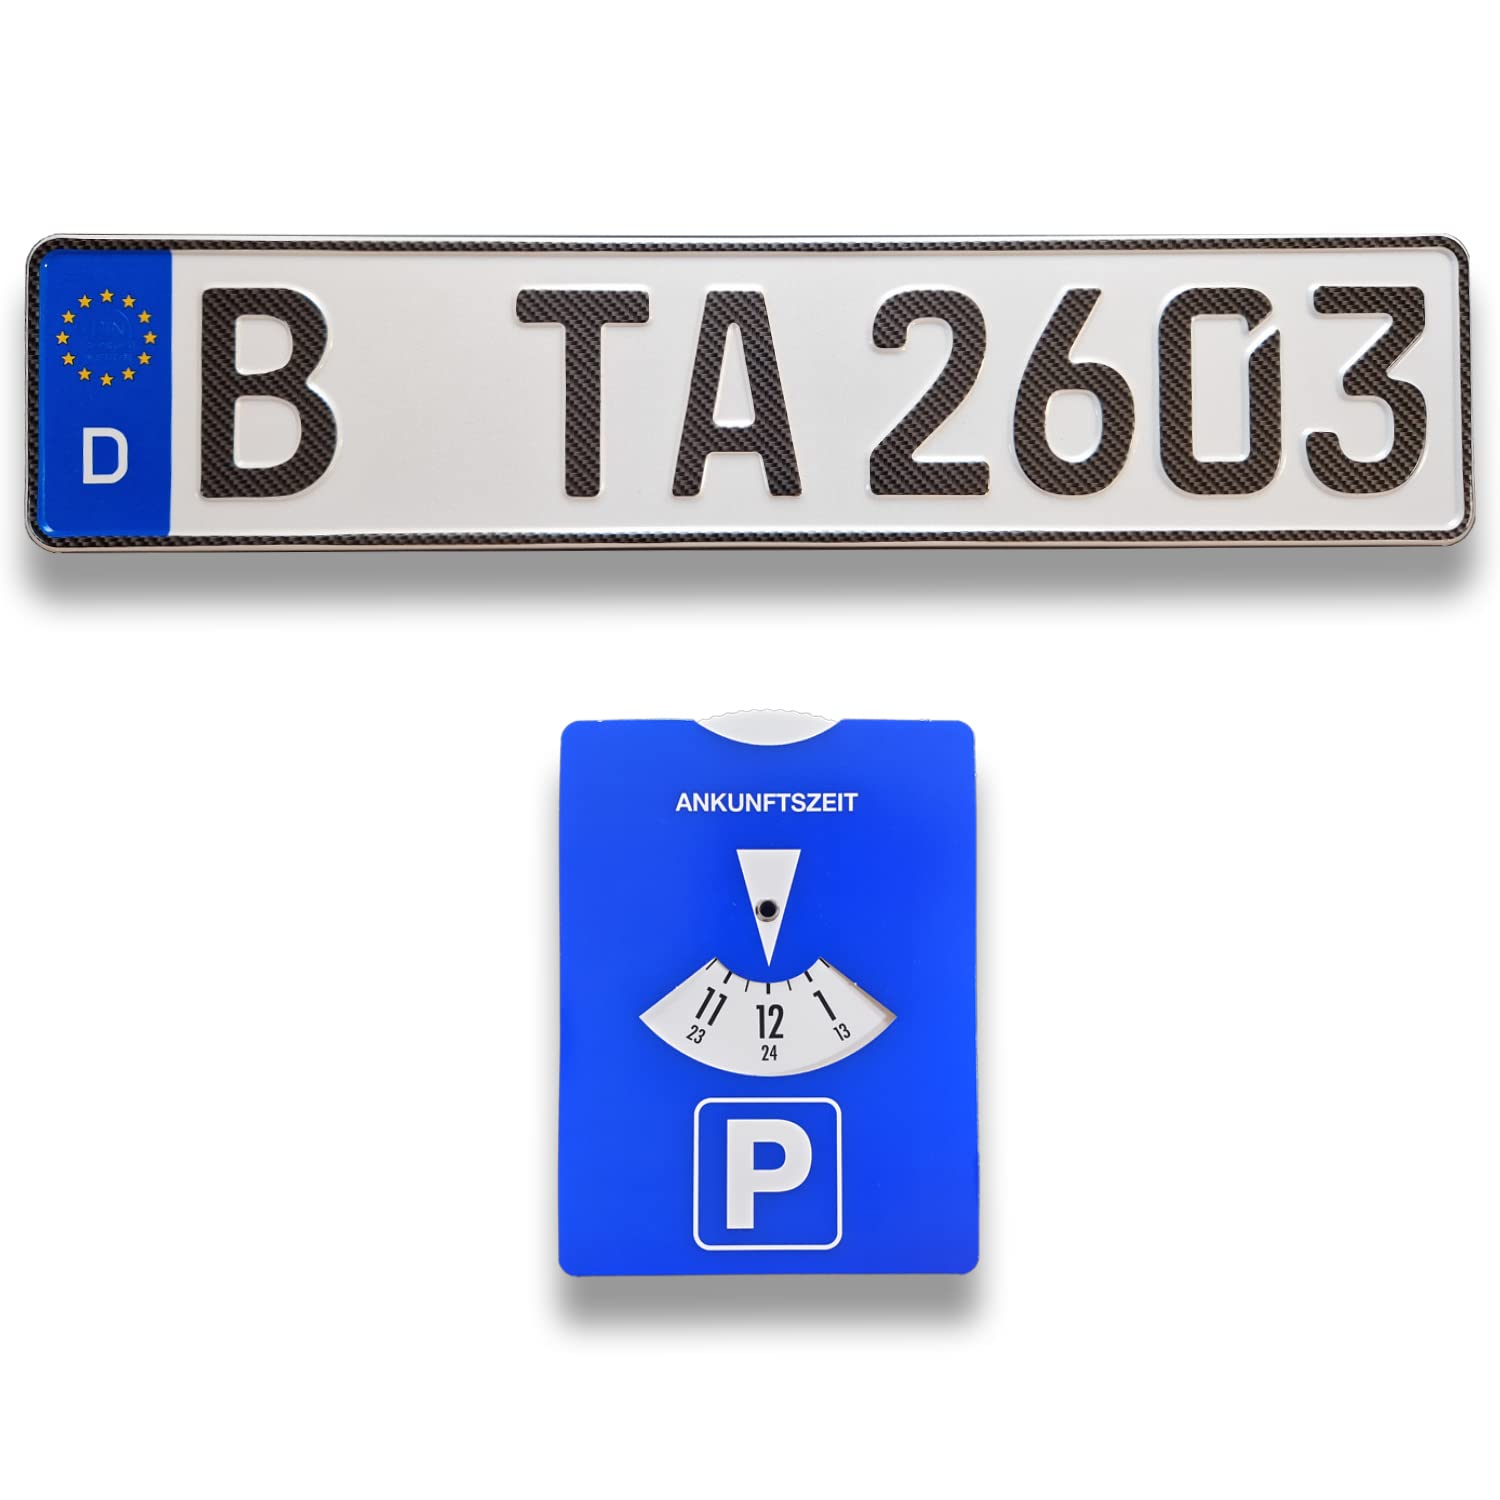 TA TradeArea 1 DIN-zertifiziertes Kfz-Kennzeichen in Carbon-Optik in der Standard-Größe 520x110 mm inklusive Parkscheibe passend für alle Deutschen Fahrzeuge (1 Kennzeichen Carbon-Optik) von TA TradeArea